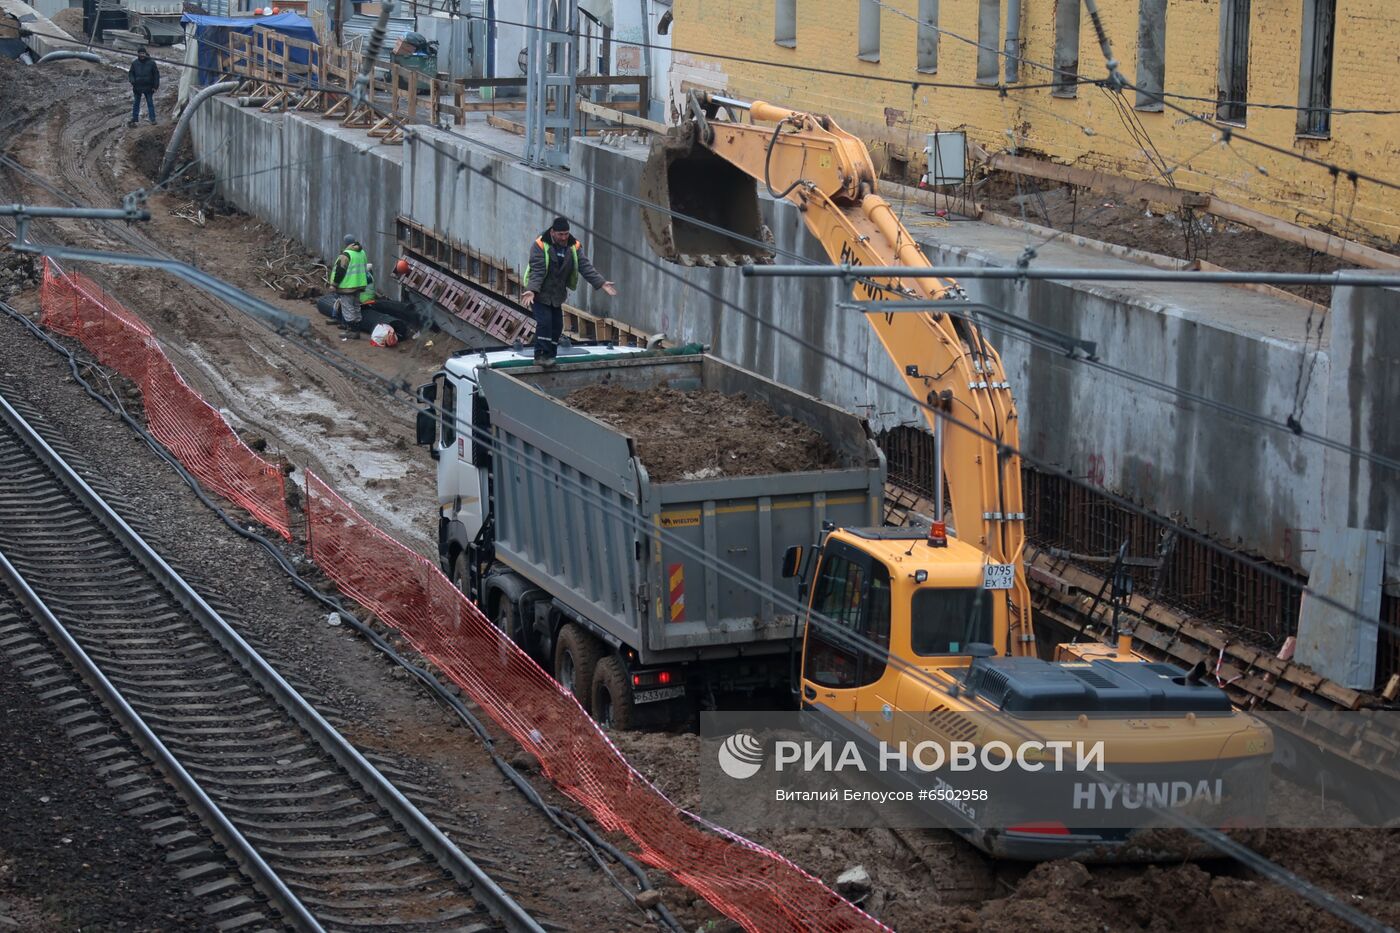 Реконструкция участка МЦД-2 от станции "Каланчевская" до Курского вокзала